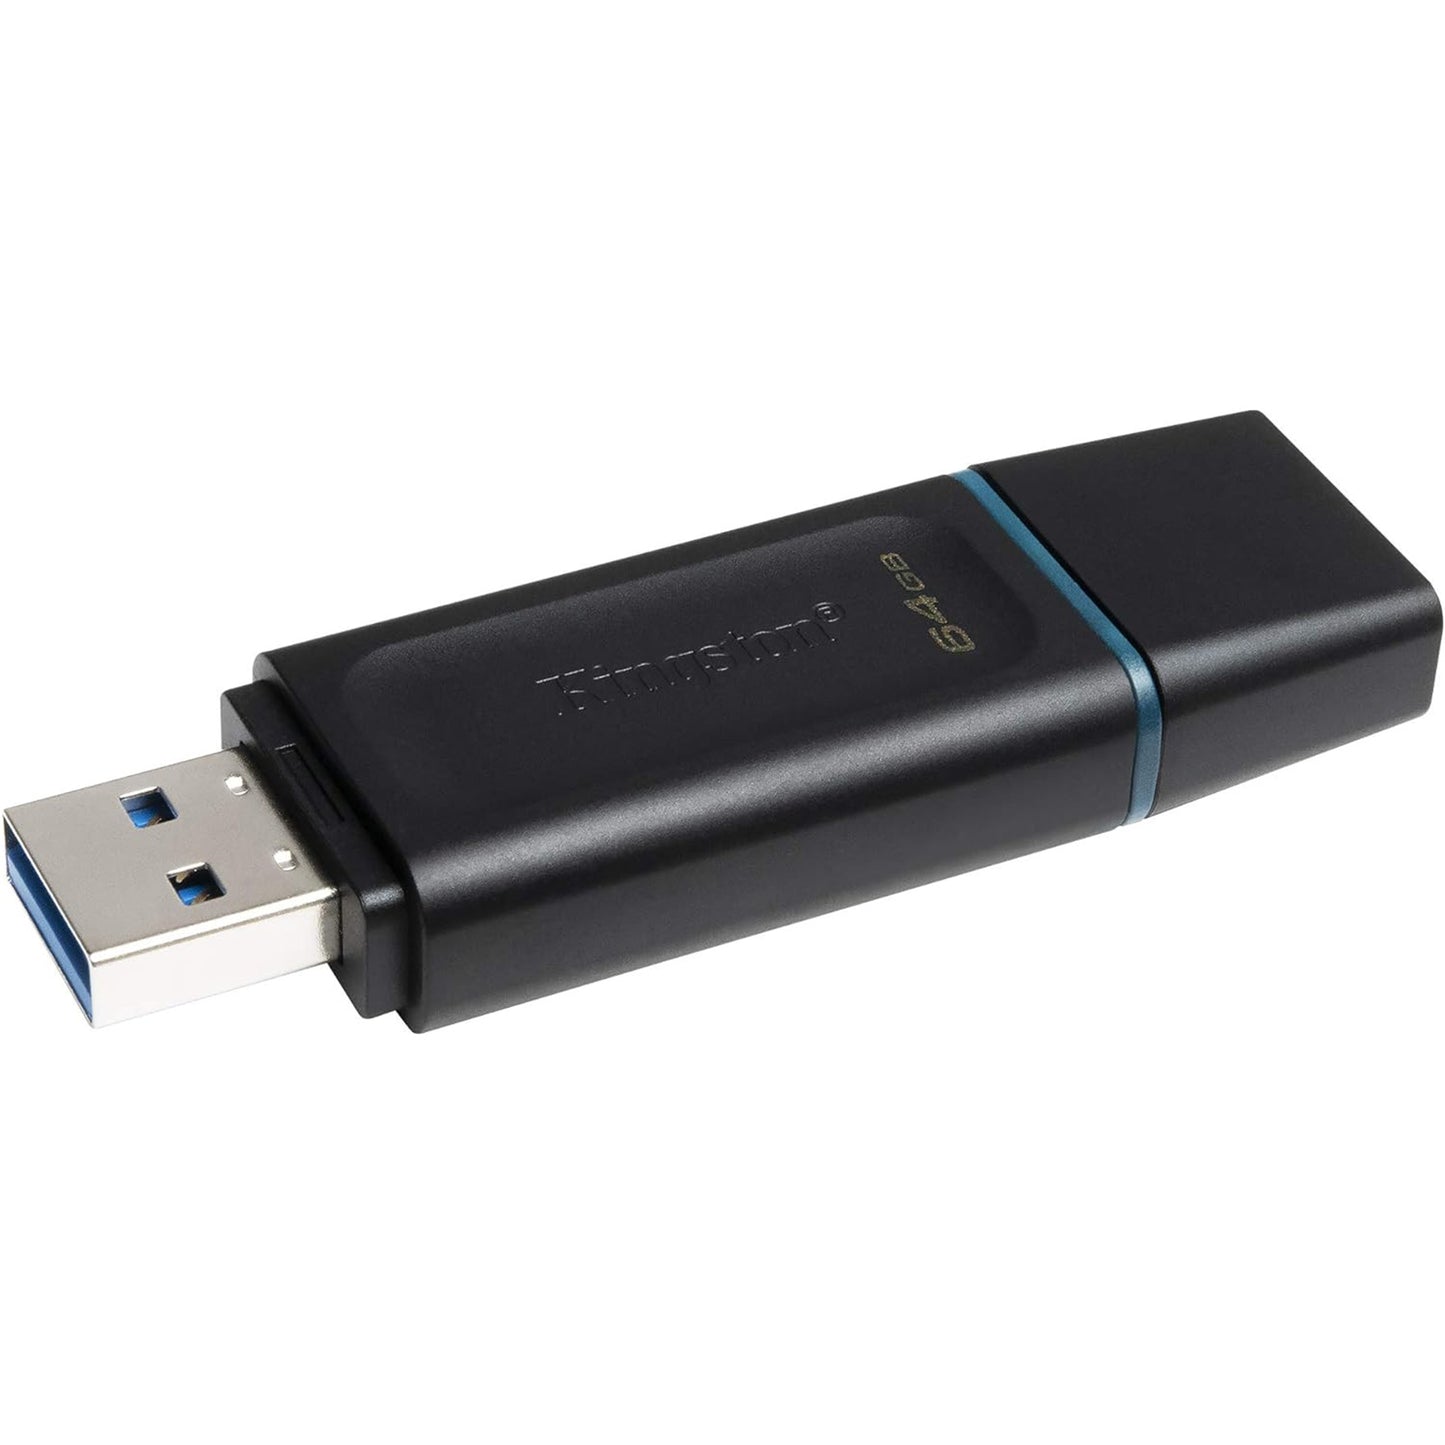 Kingston DTX 64GB USB Flash Drive with Cap 3.2 64GB